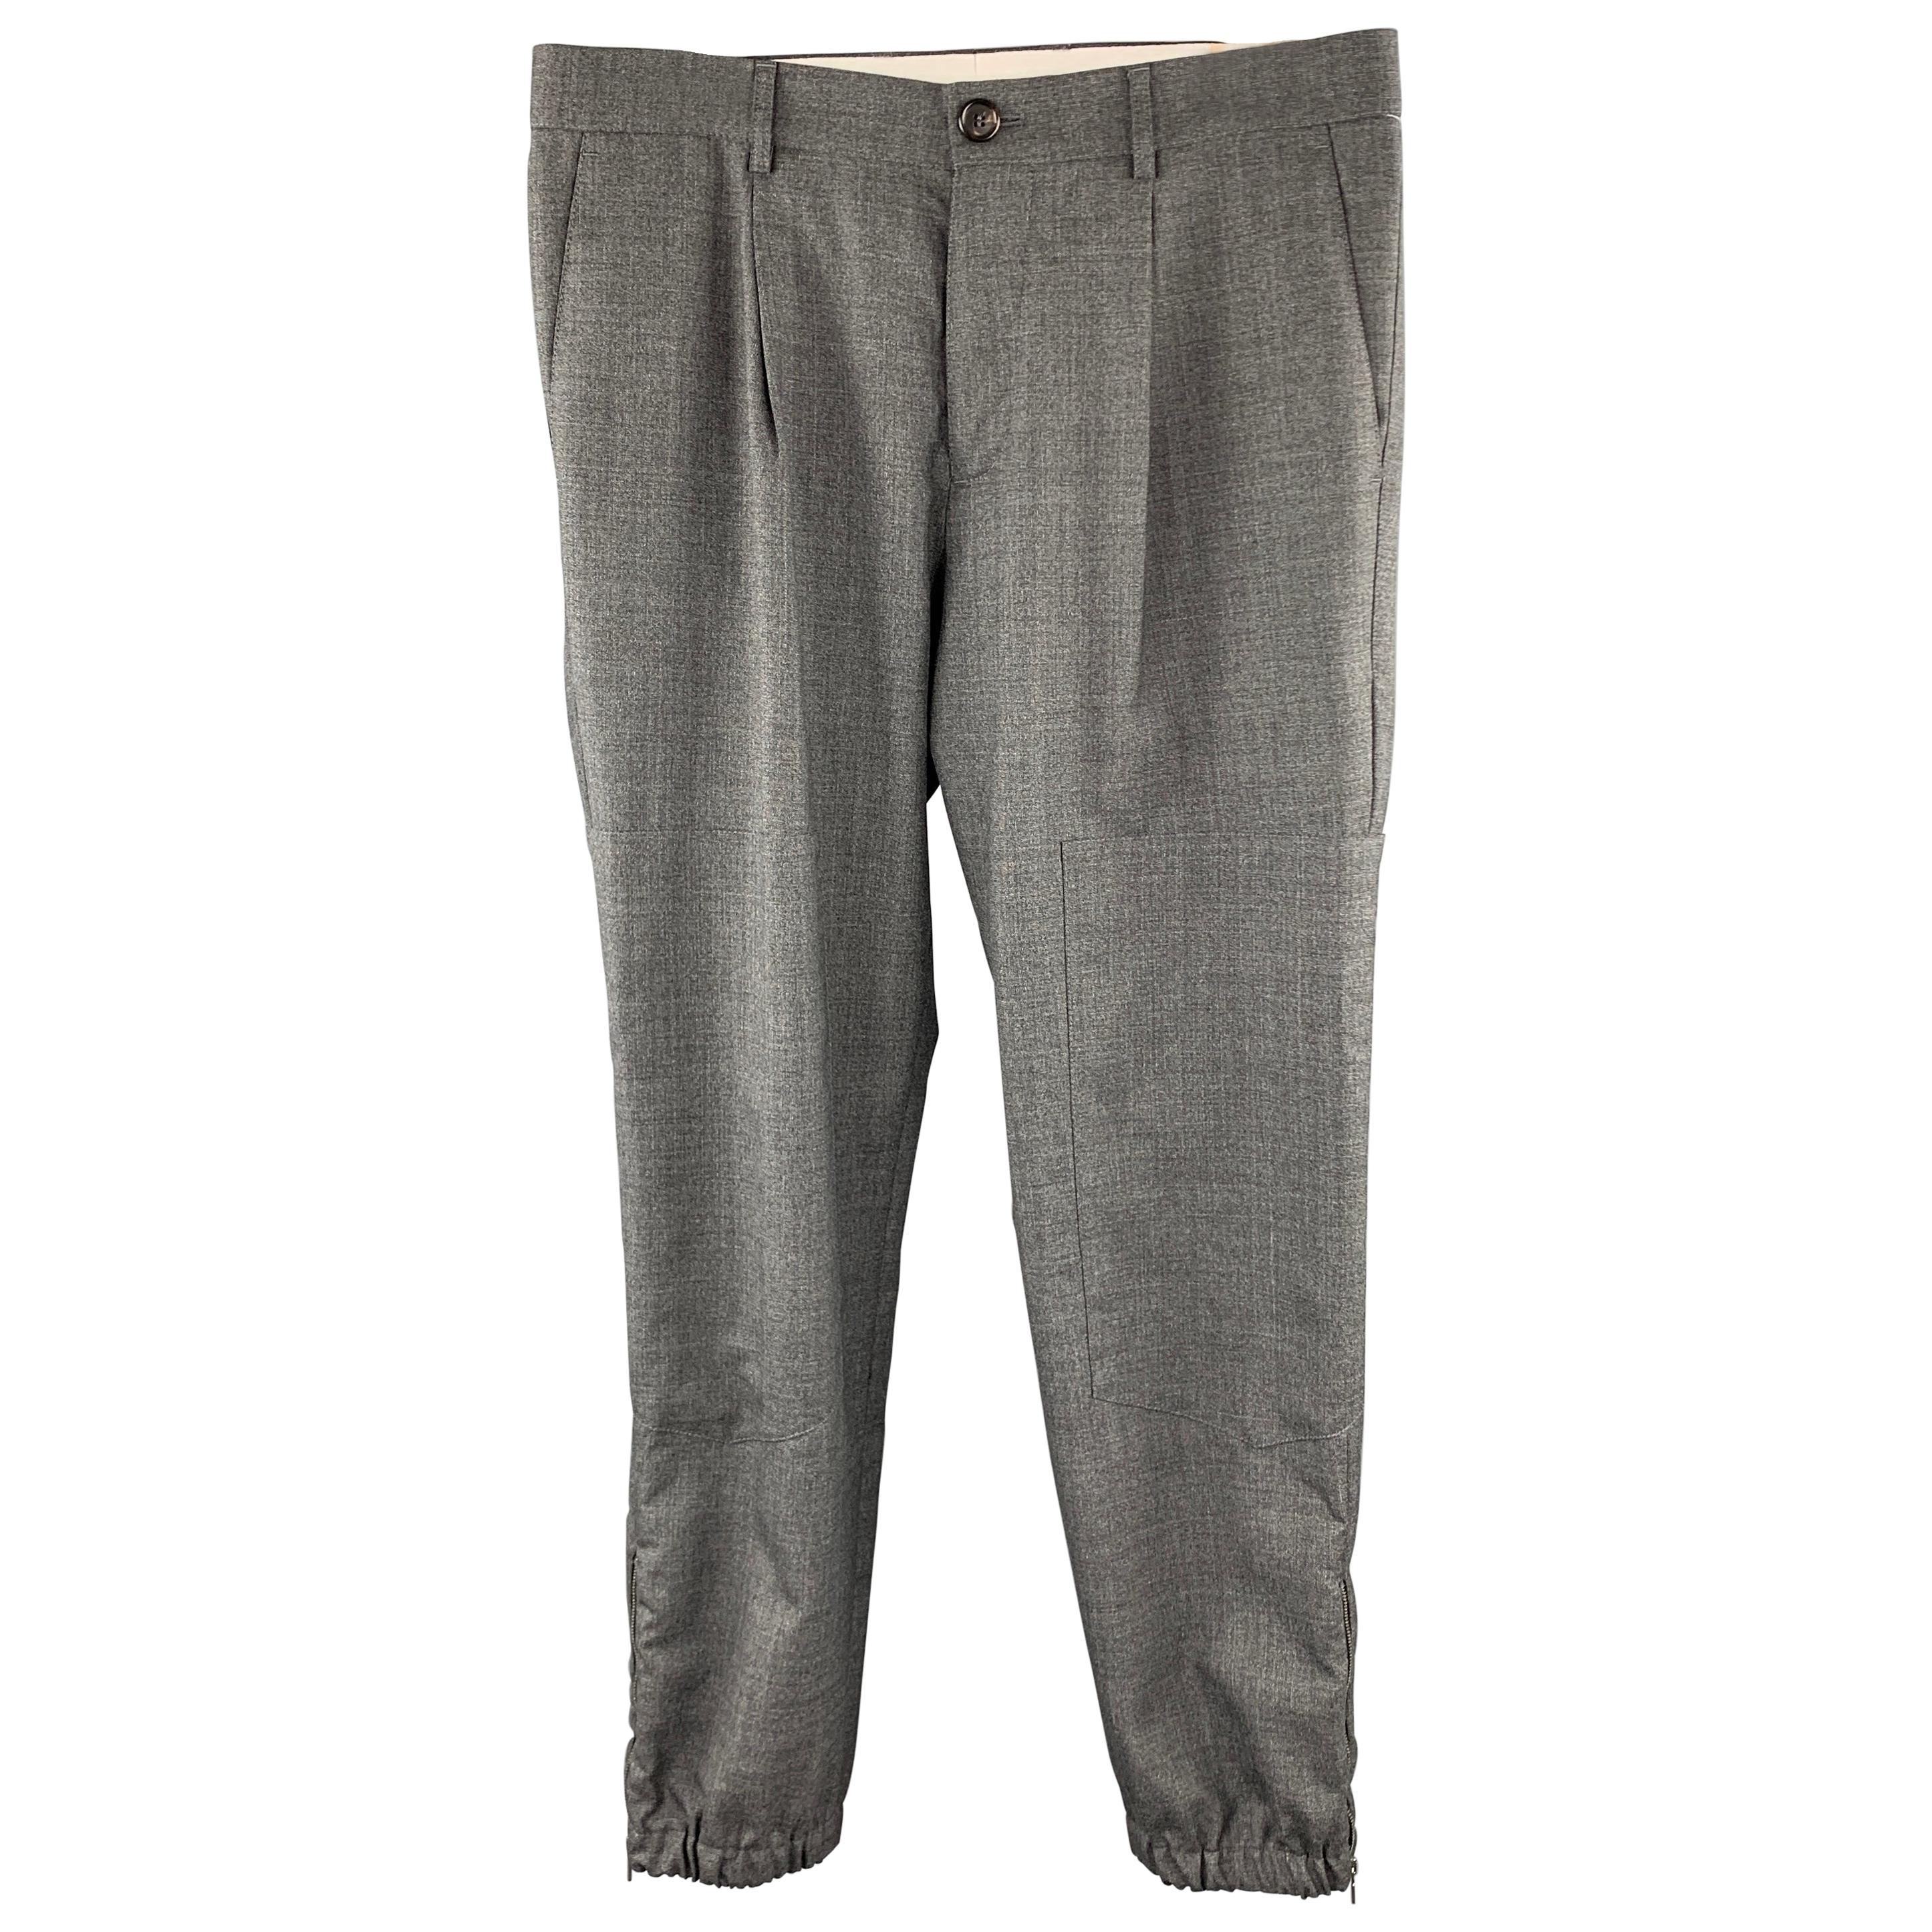 BRUNELLO CUCINELLI Size 32 Dark Gray Wool Single Pleat Dress Pants